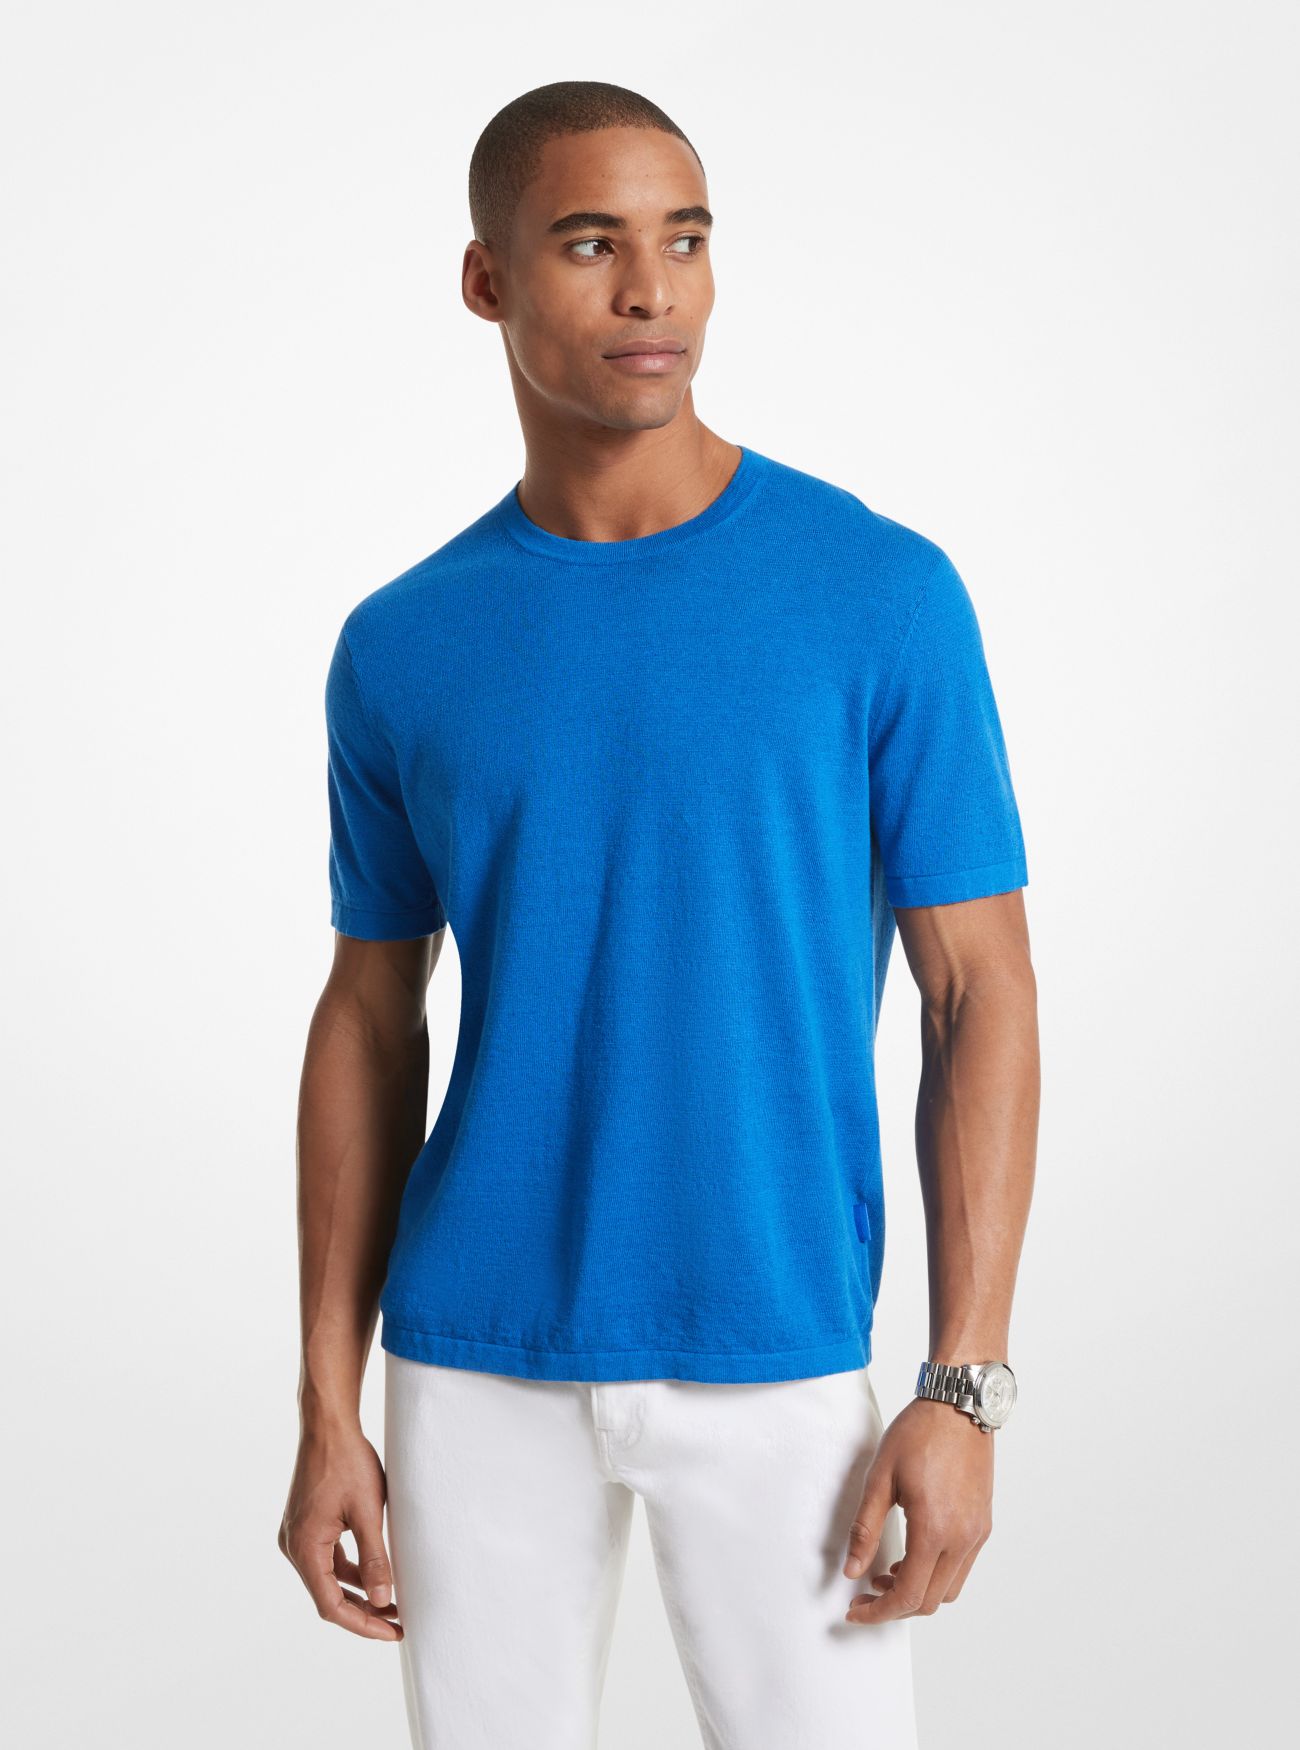 MK Linen Blend Shirt - Blue - Michael Kors